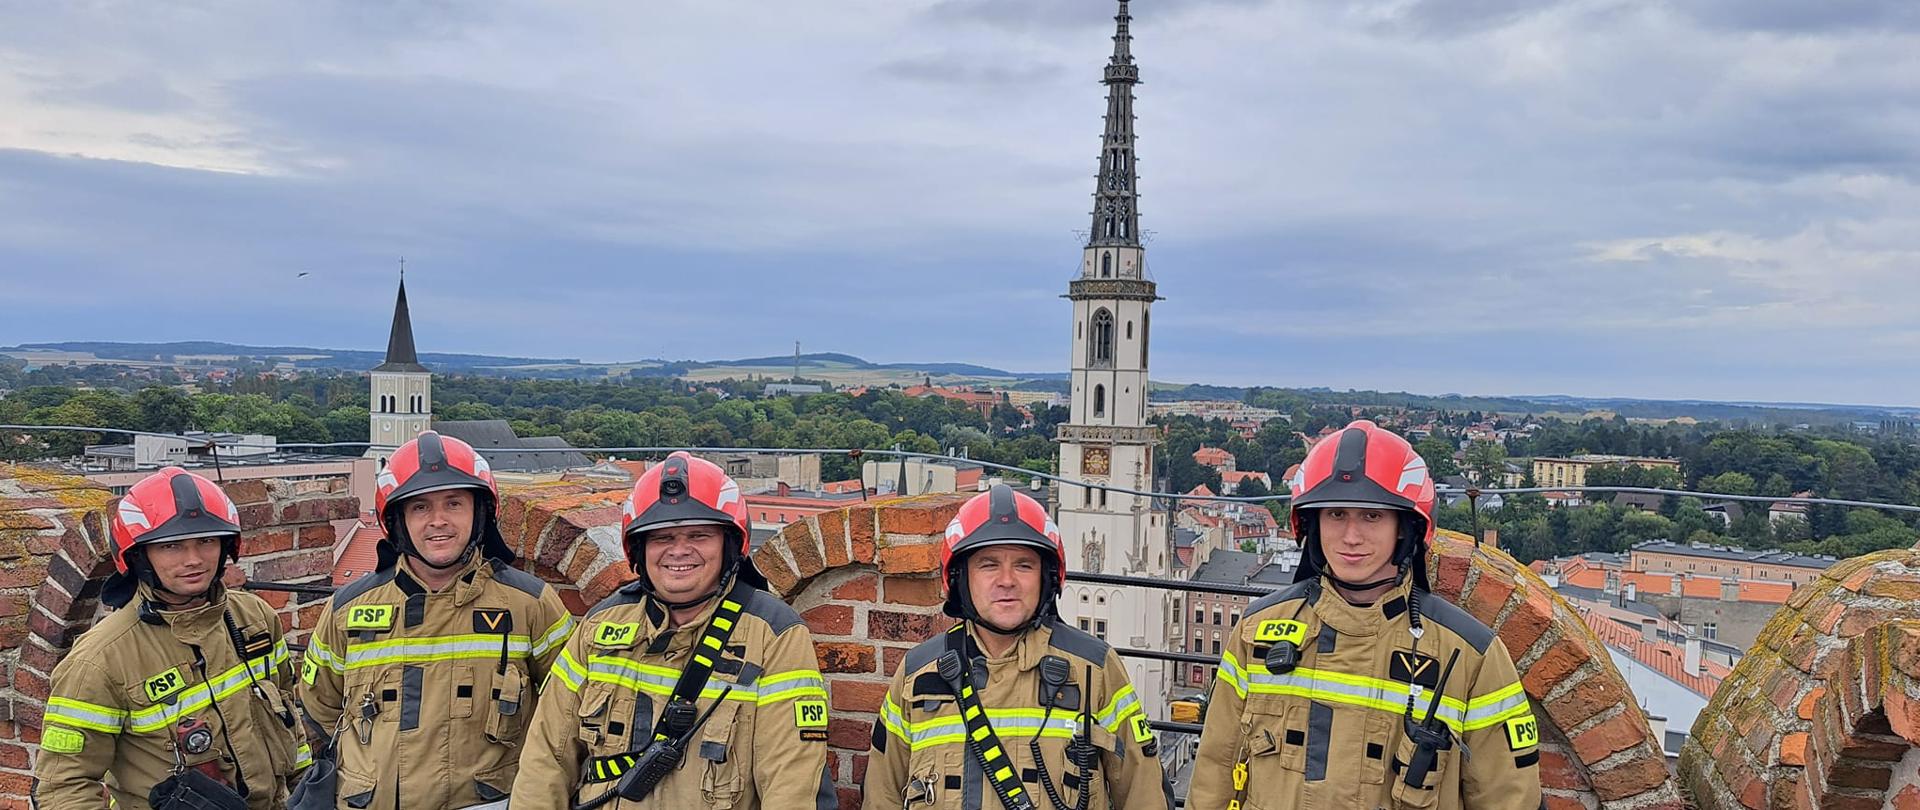 strażacy stoją na górnej kondygnacji na krzywej wieży w Ząbkowicach Śl.